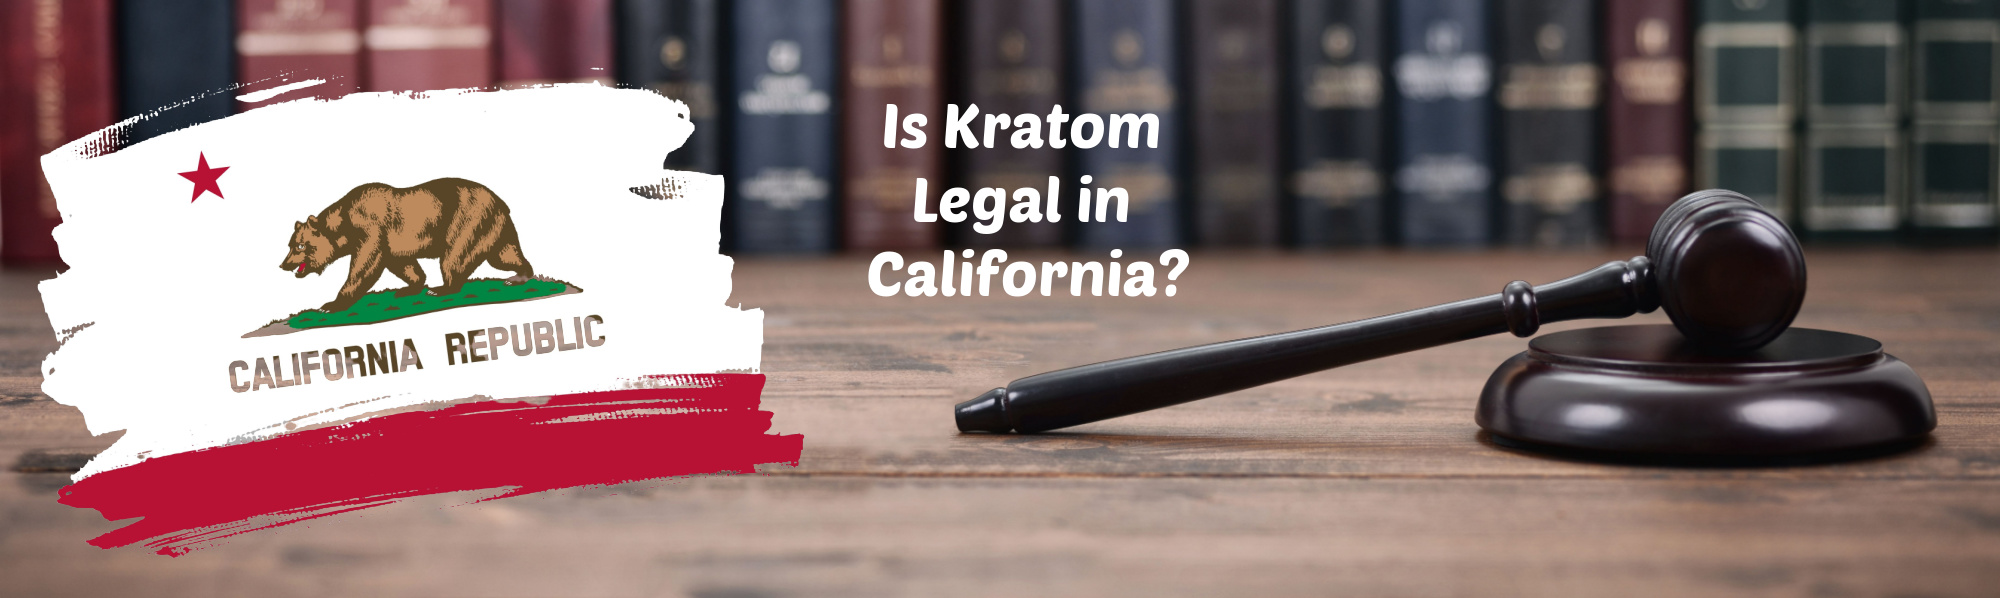 image of is kratom legal in california